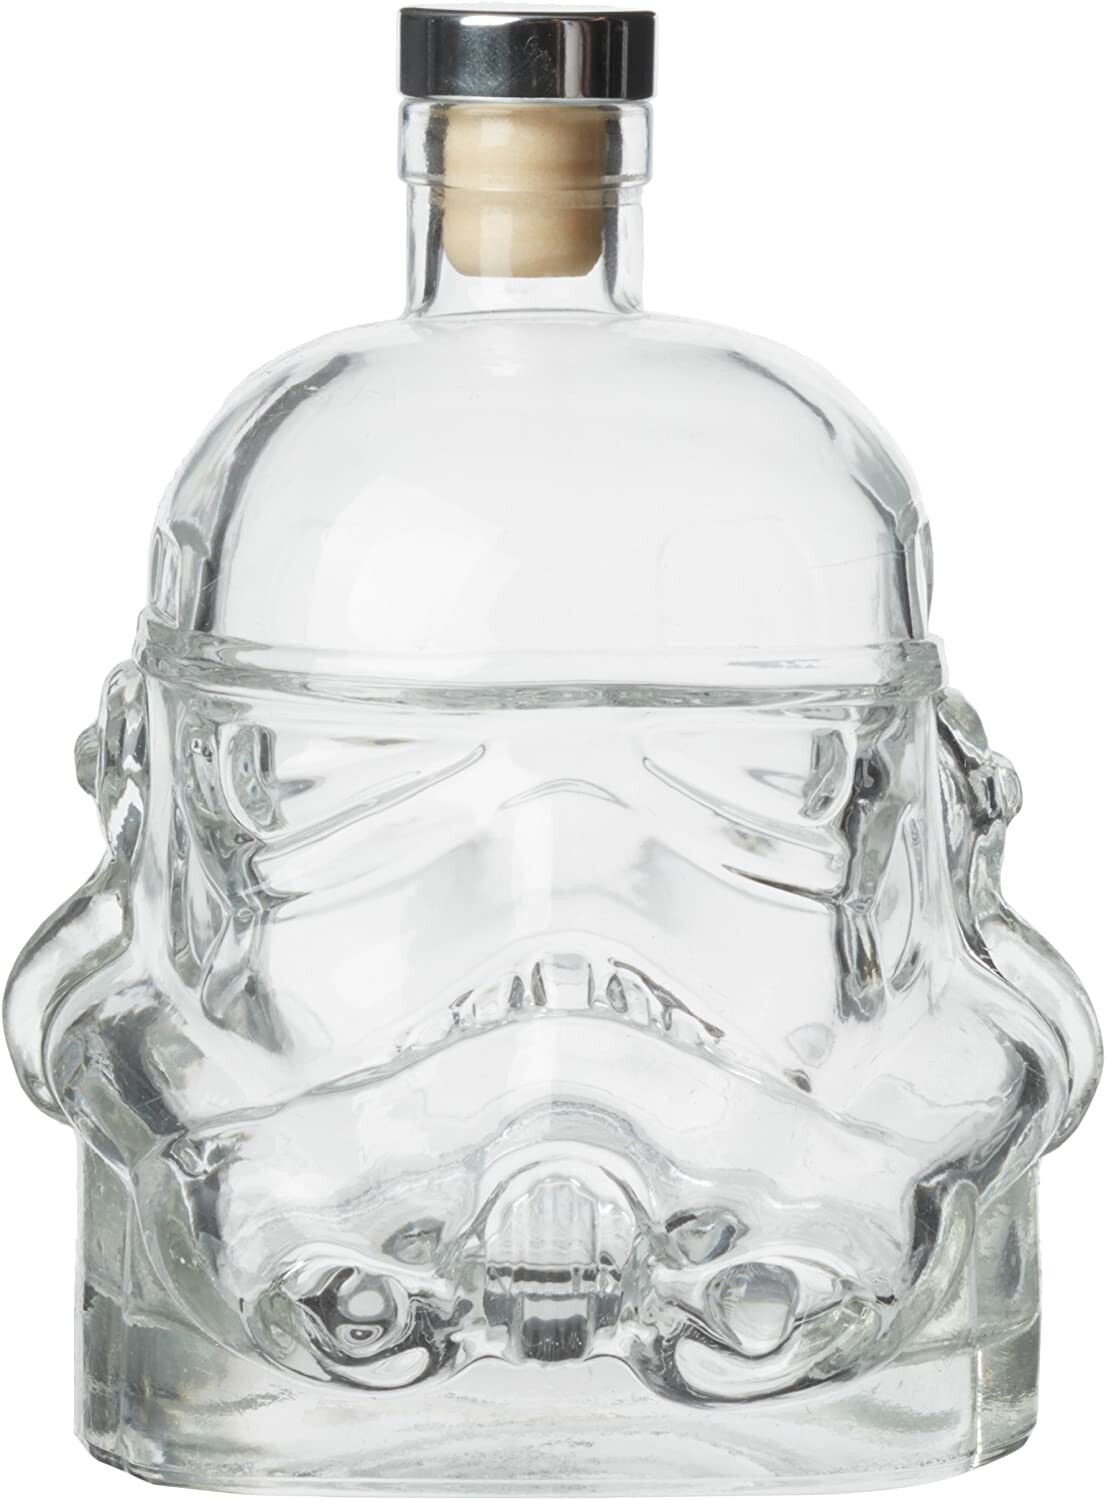 Ensemble de verres à vin avec casque Storm Trooper, carafe à